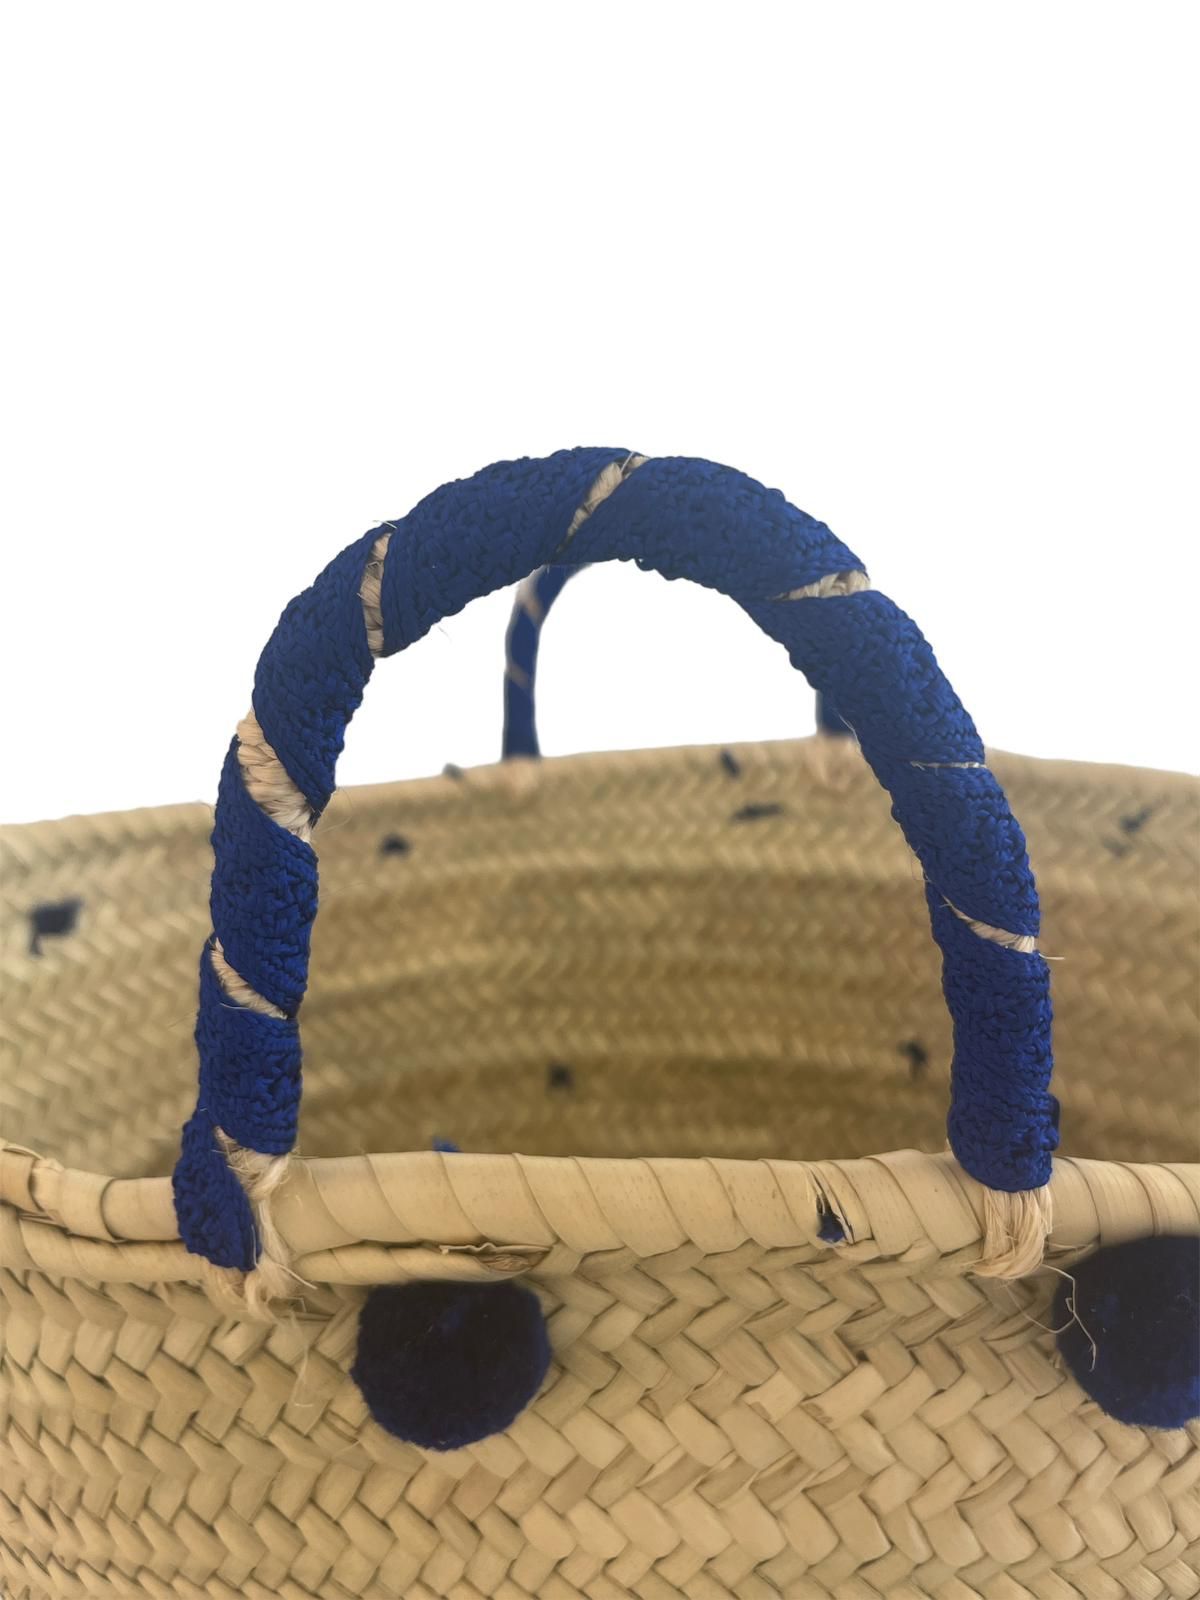 Borsa fatta a mano e intrecciata in foglie di palma con ricami in lana, motivo Pon Pon Blu